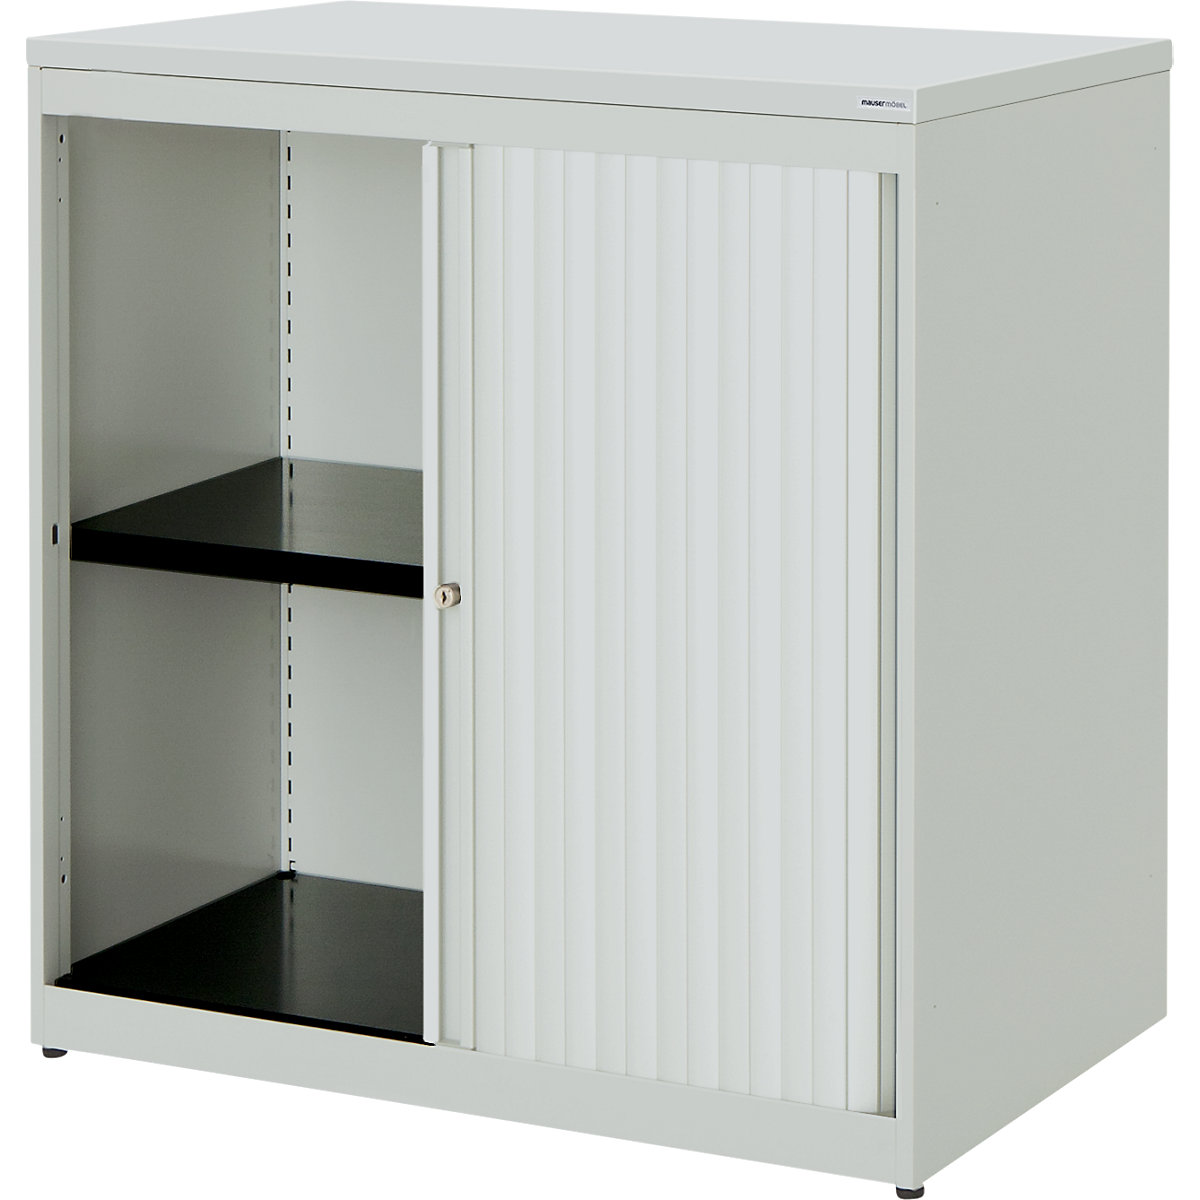 Horizontal roller shutter cupboard – mauser, HxWxD 830 x 800 x 432 mm, plastic panel, 1 shelf, light grey / light grey / light grey-4